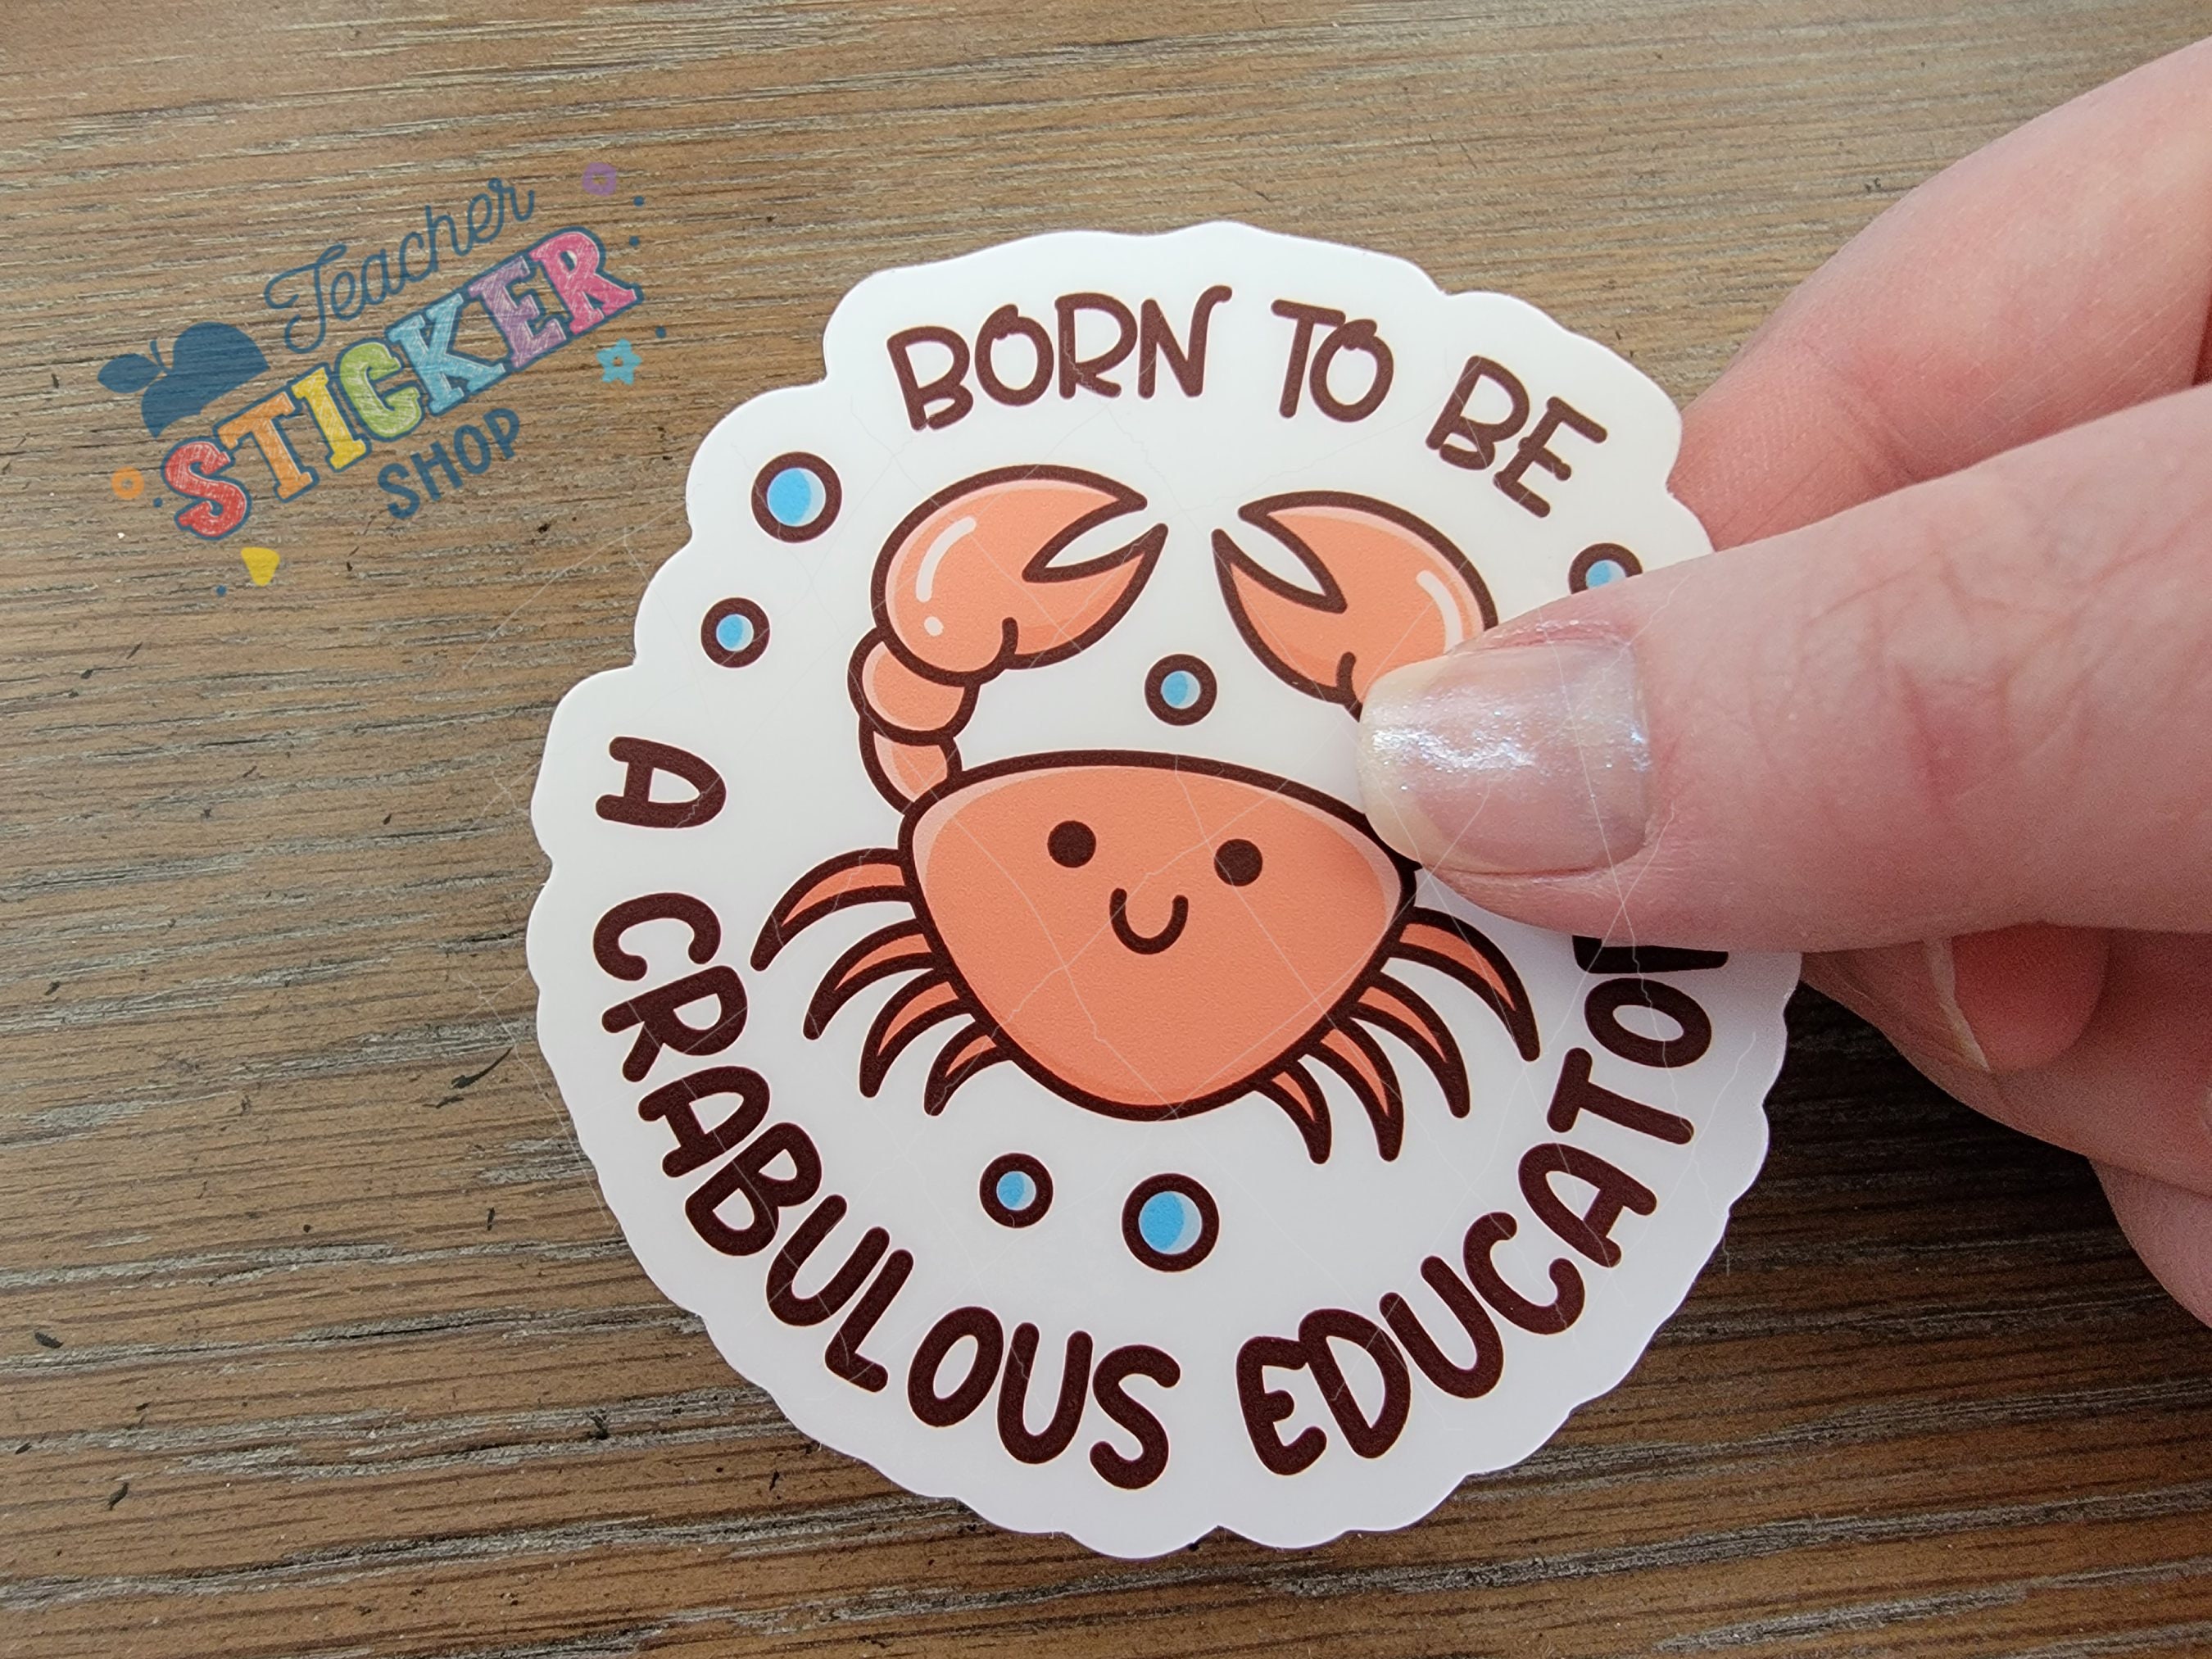 Proud High School Teacher Sticker - Teacher Stickers – InBooze